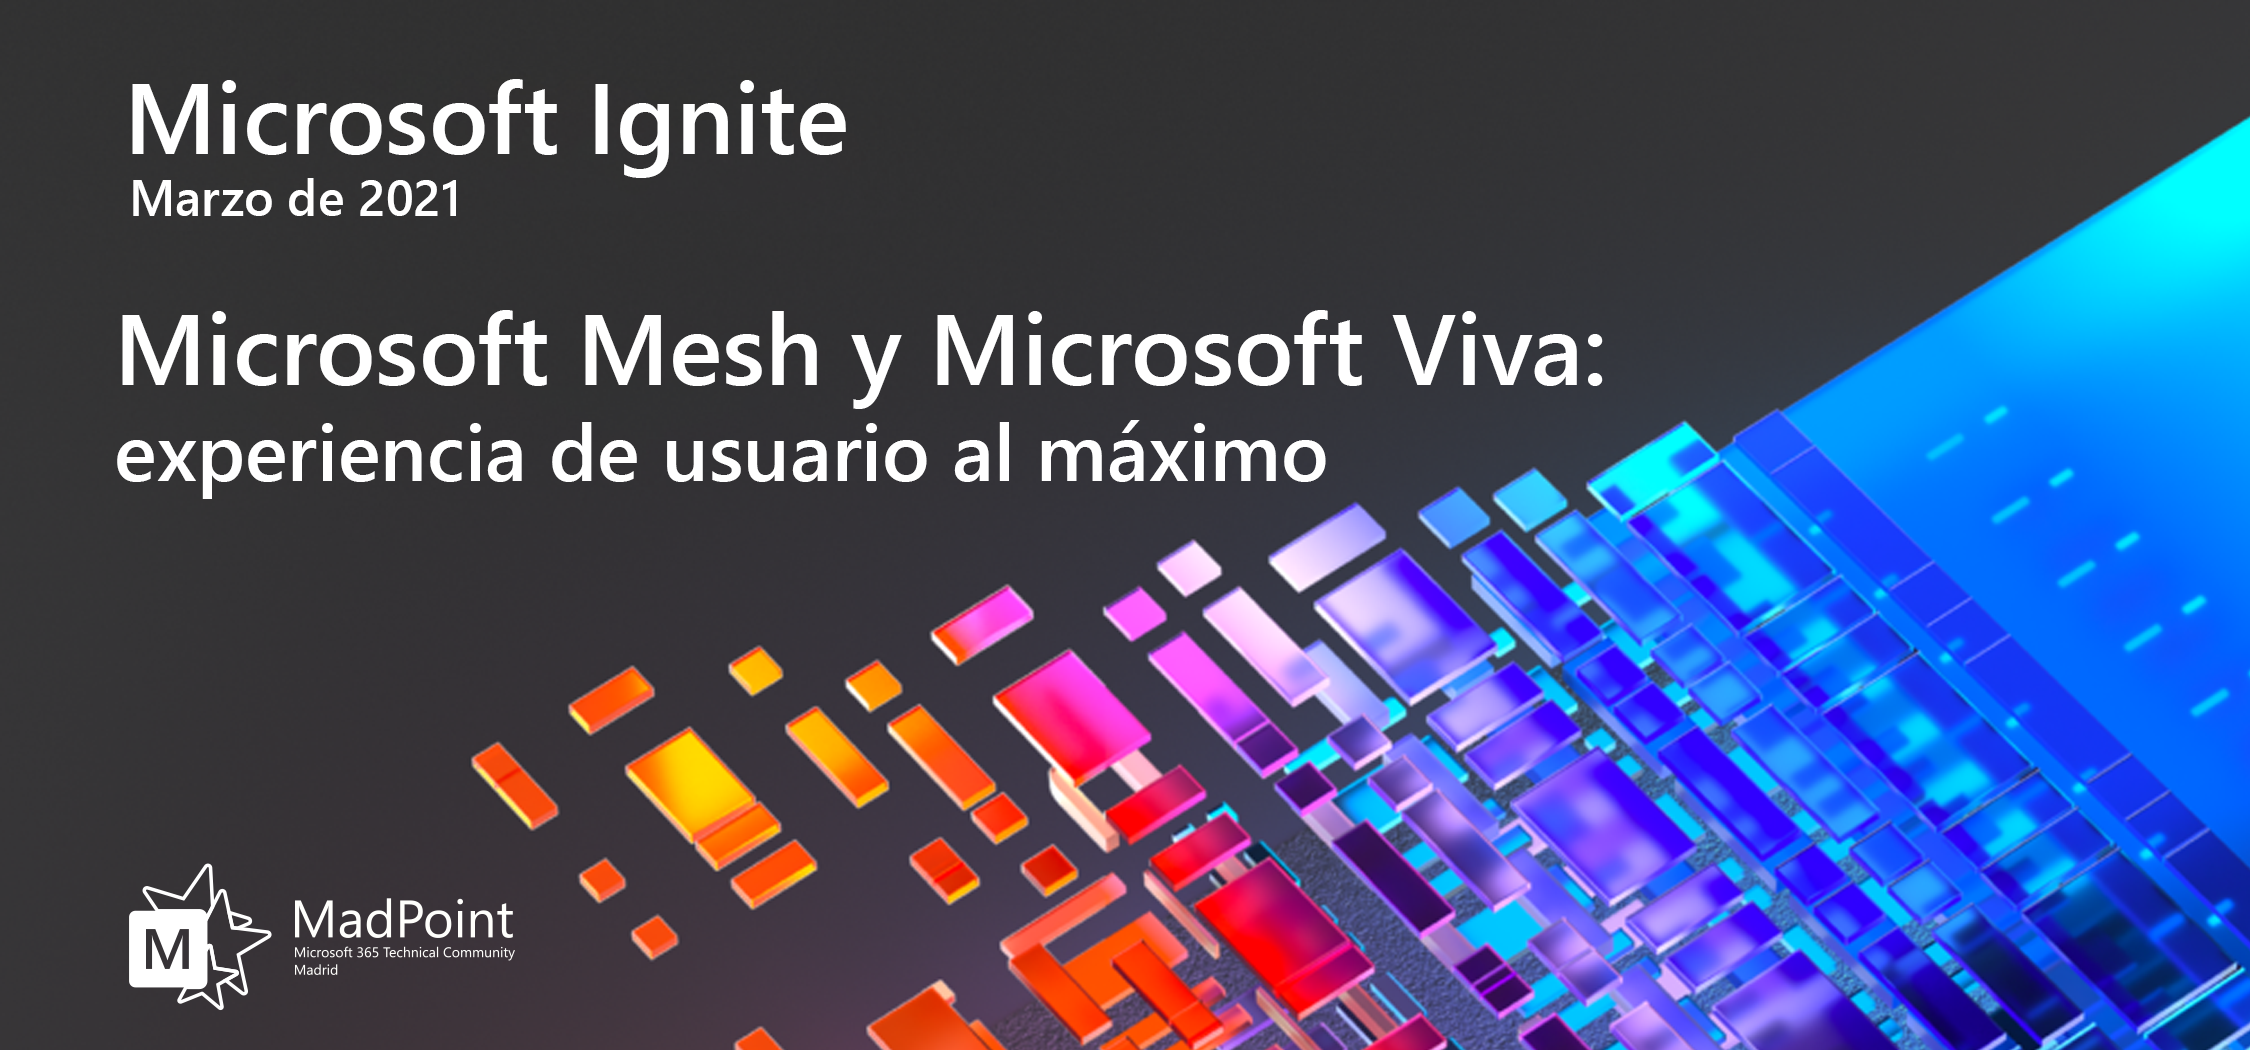 Microsoft Ignite 2021: Microsoft Mesh y Microsoft Viva, experiencia de usuario al máximo